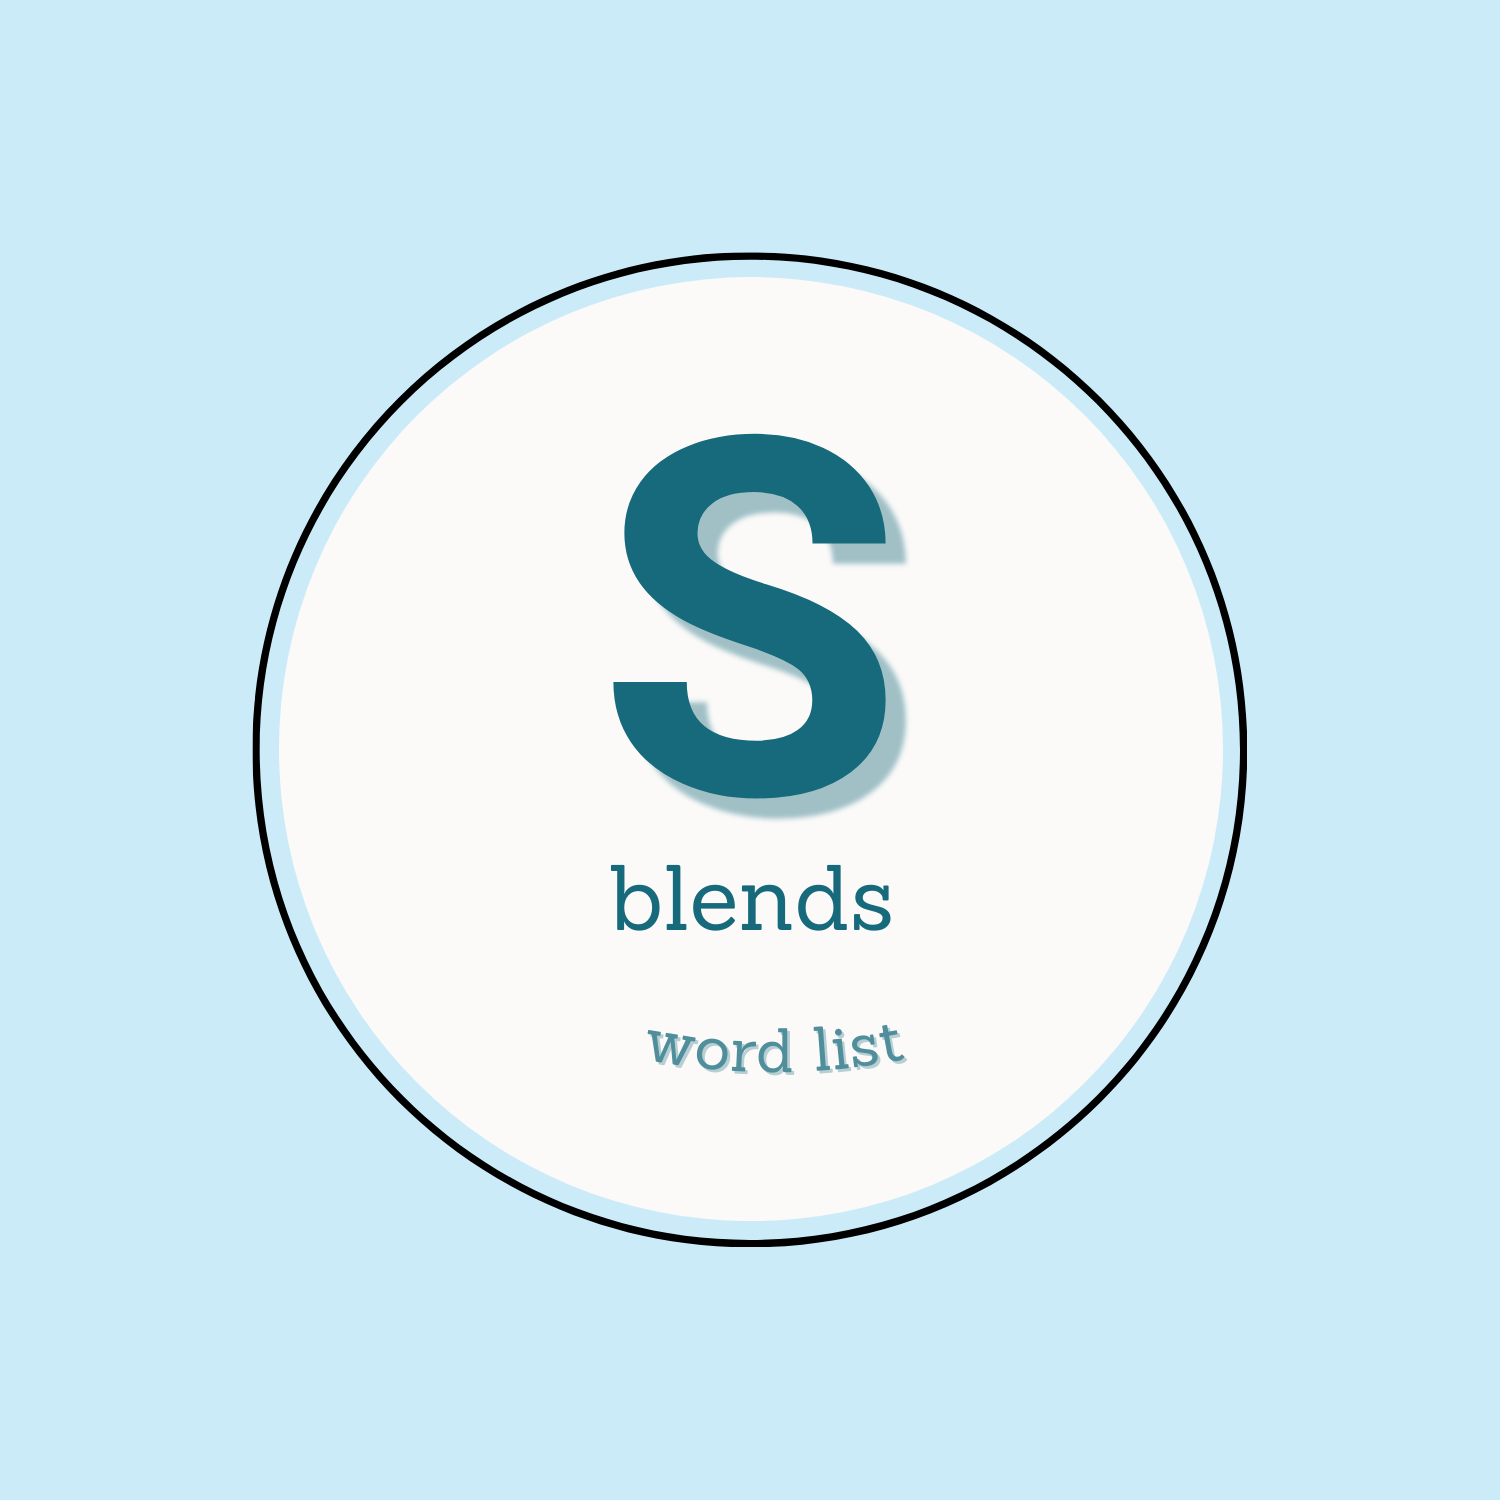 s blends word list